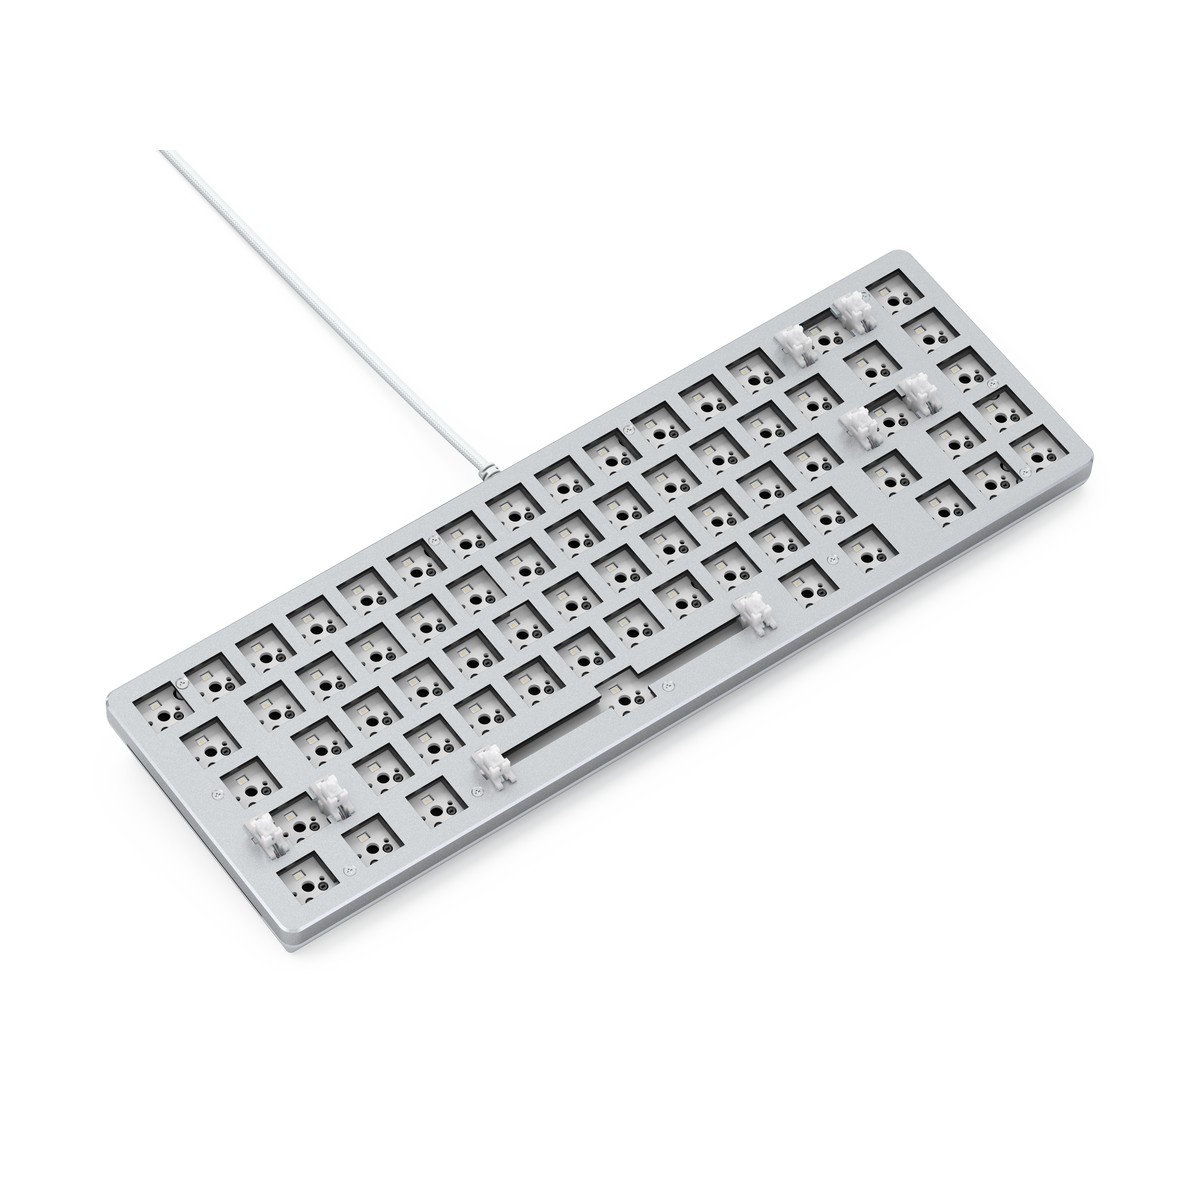 Glorious GMMK 2 65% Keyboard Barebone ANSI-Layout - White